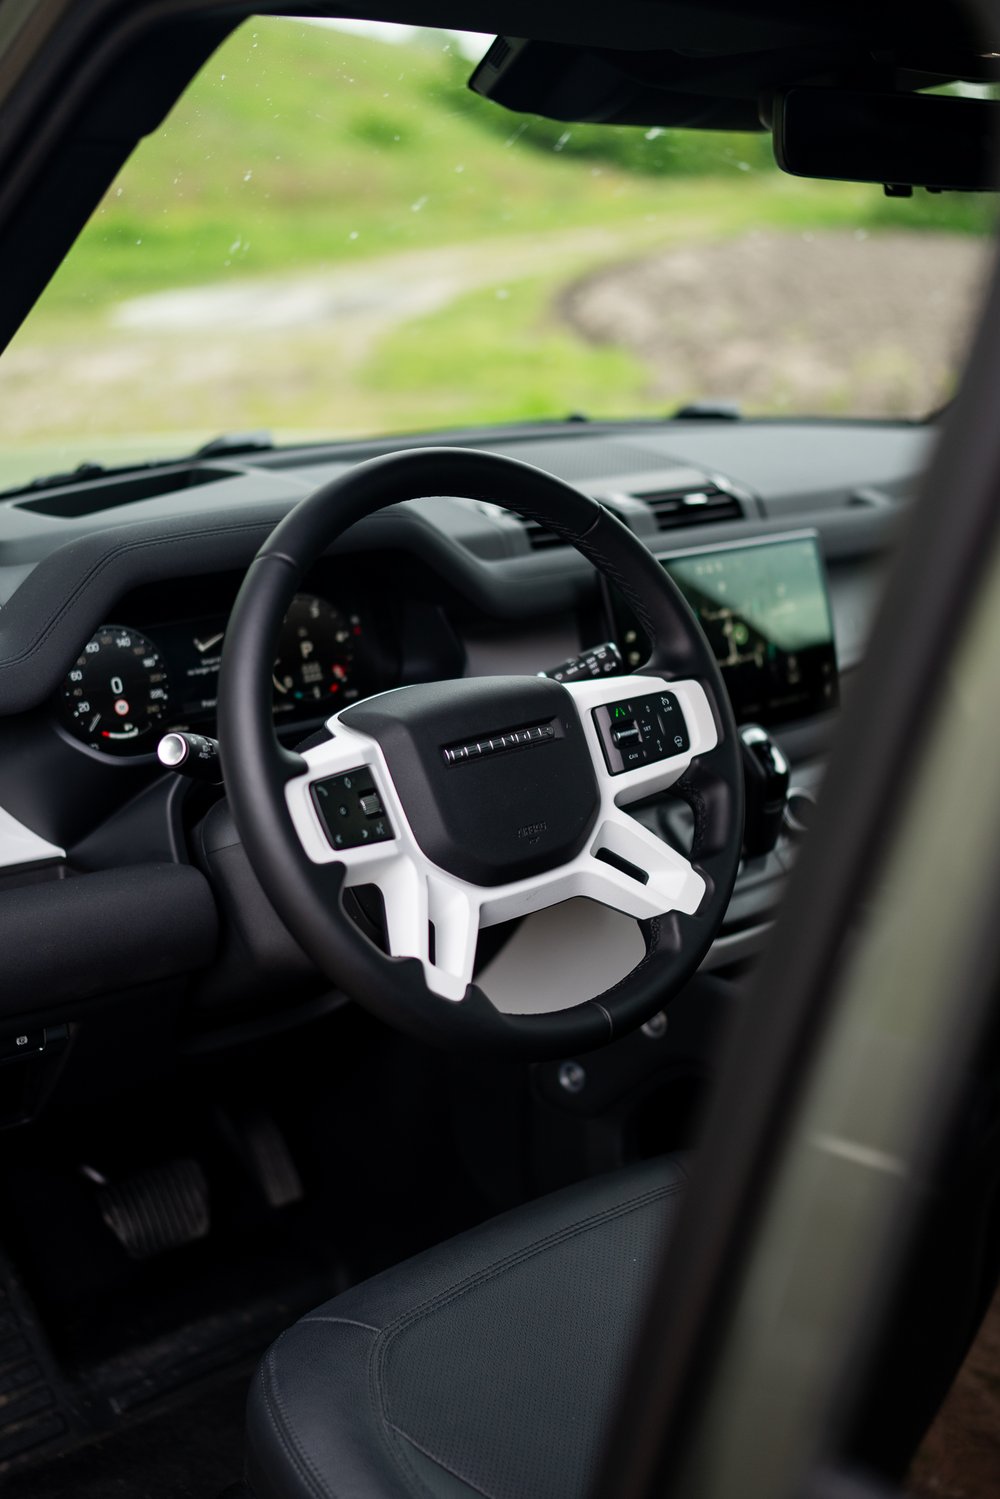 Land Rover Defender 130 Steering Wheel